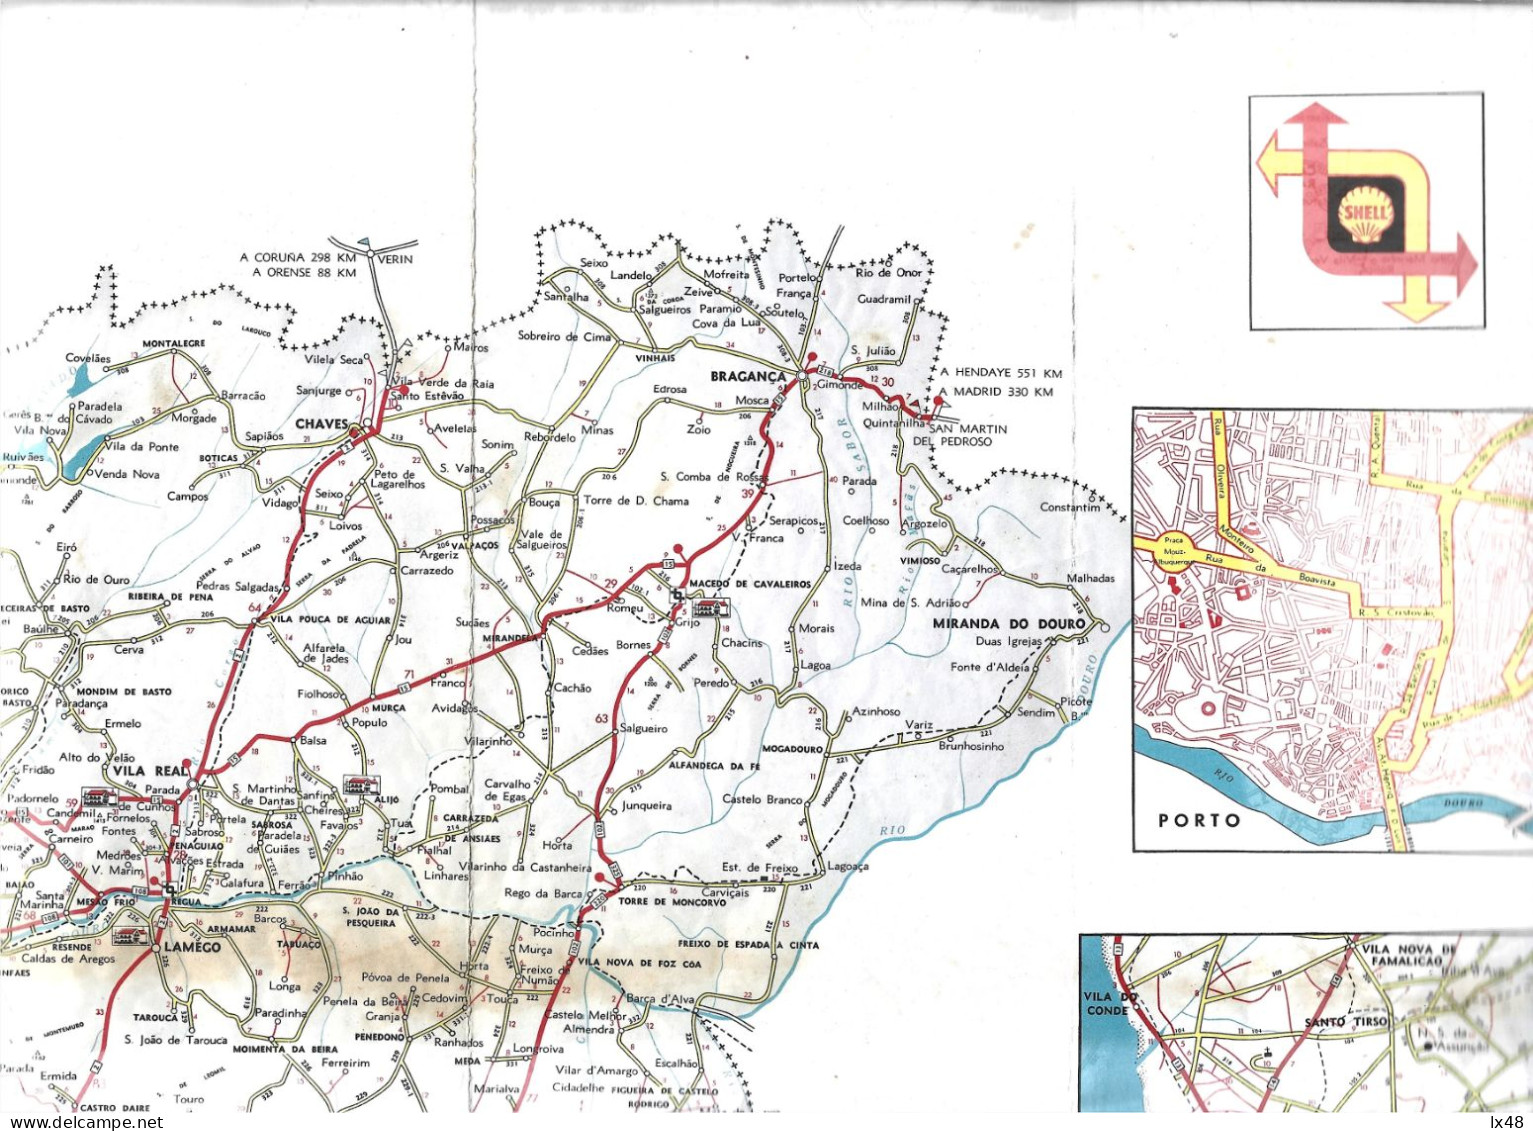 Map Of Roads Of Portugal Published By Shell 1932. Oil. Fuels. Karte Der Straßen Portugals, Veröffentlicht Von Shell. Ol. - Europa